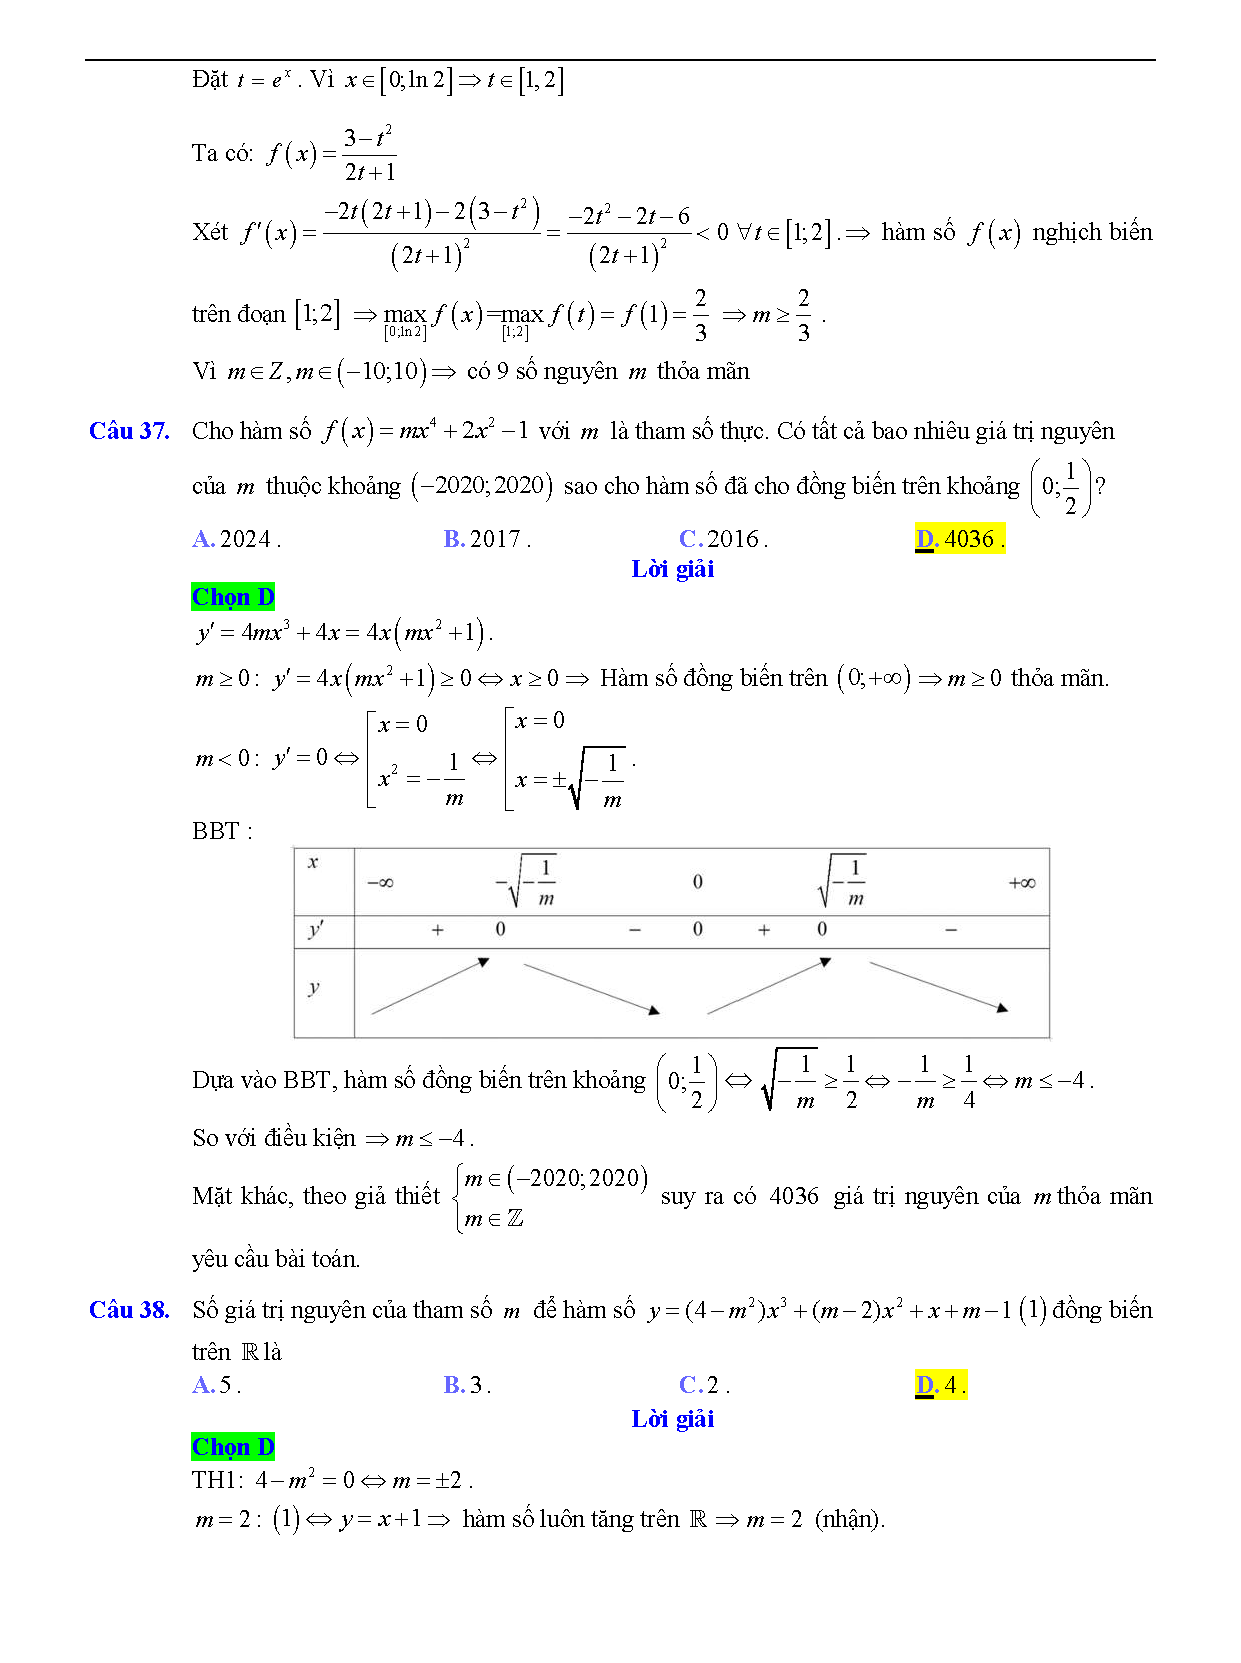 Trắc nghiệm tìm m để hàm số đơn điệu 23